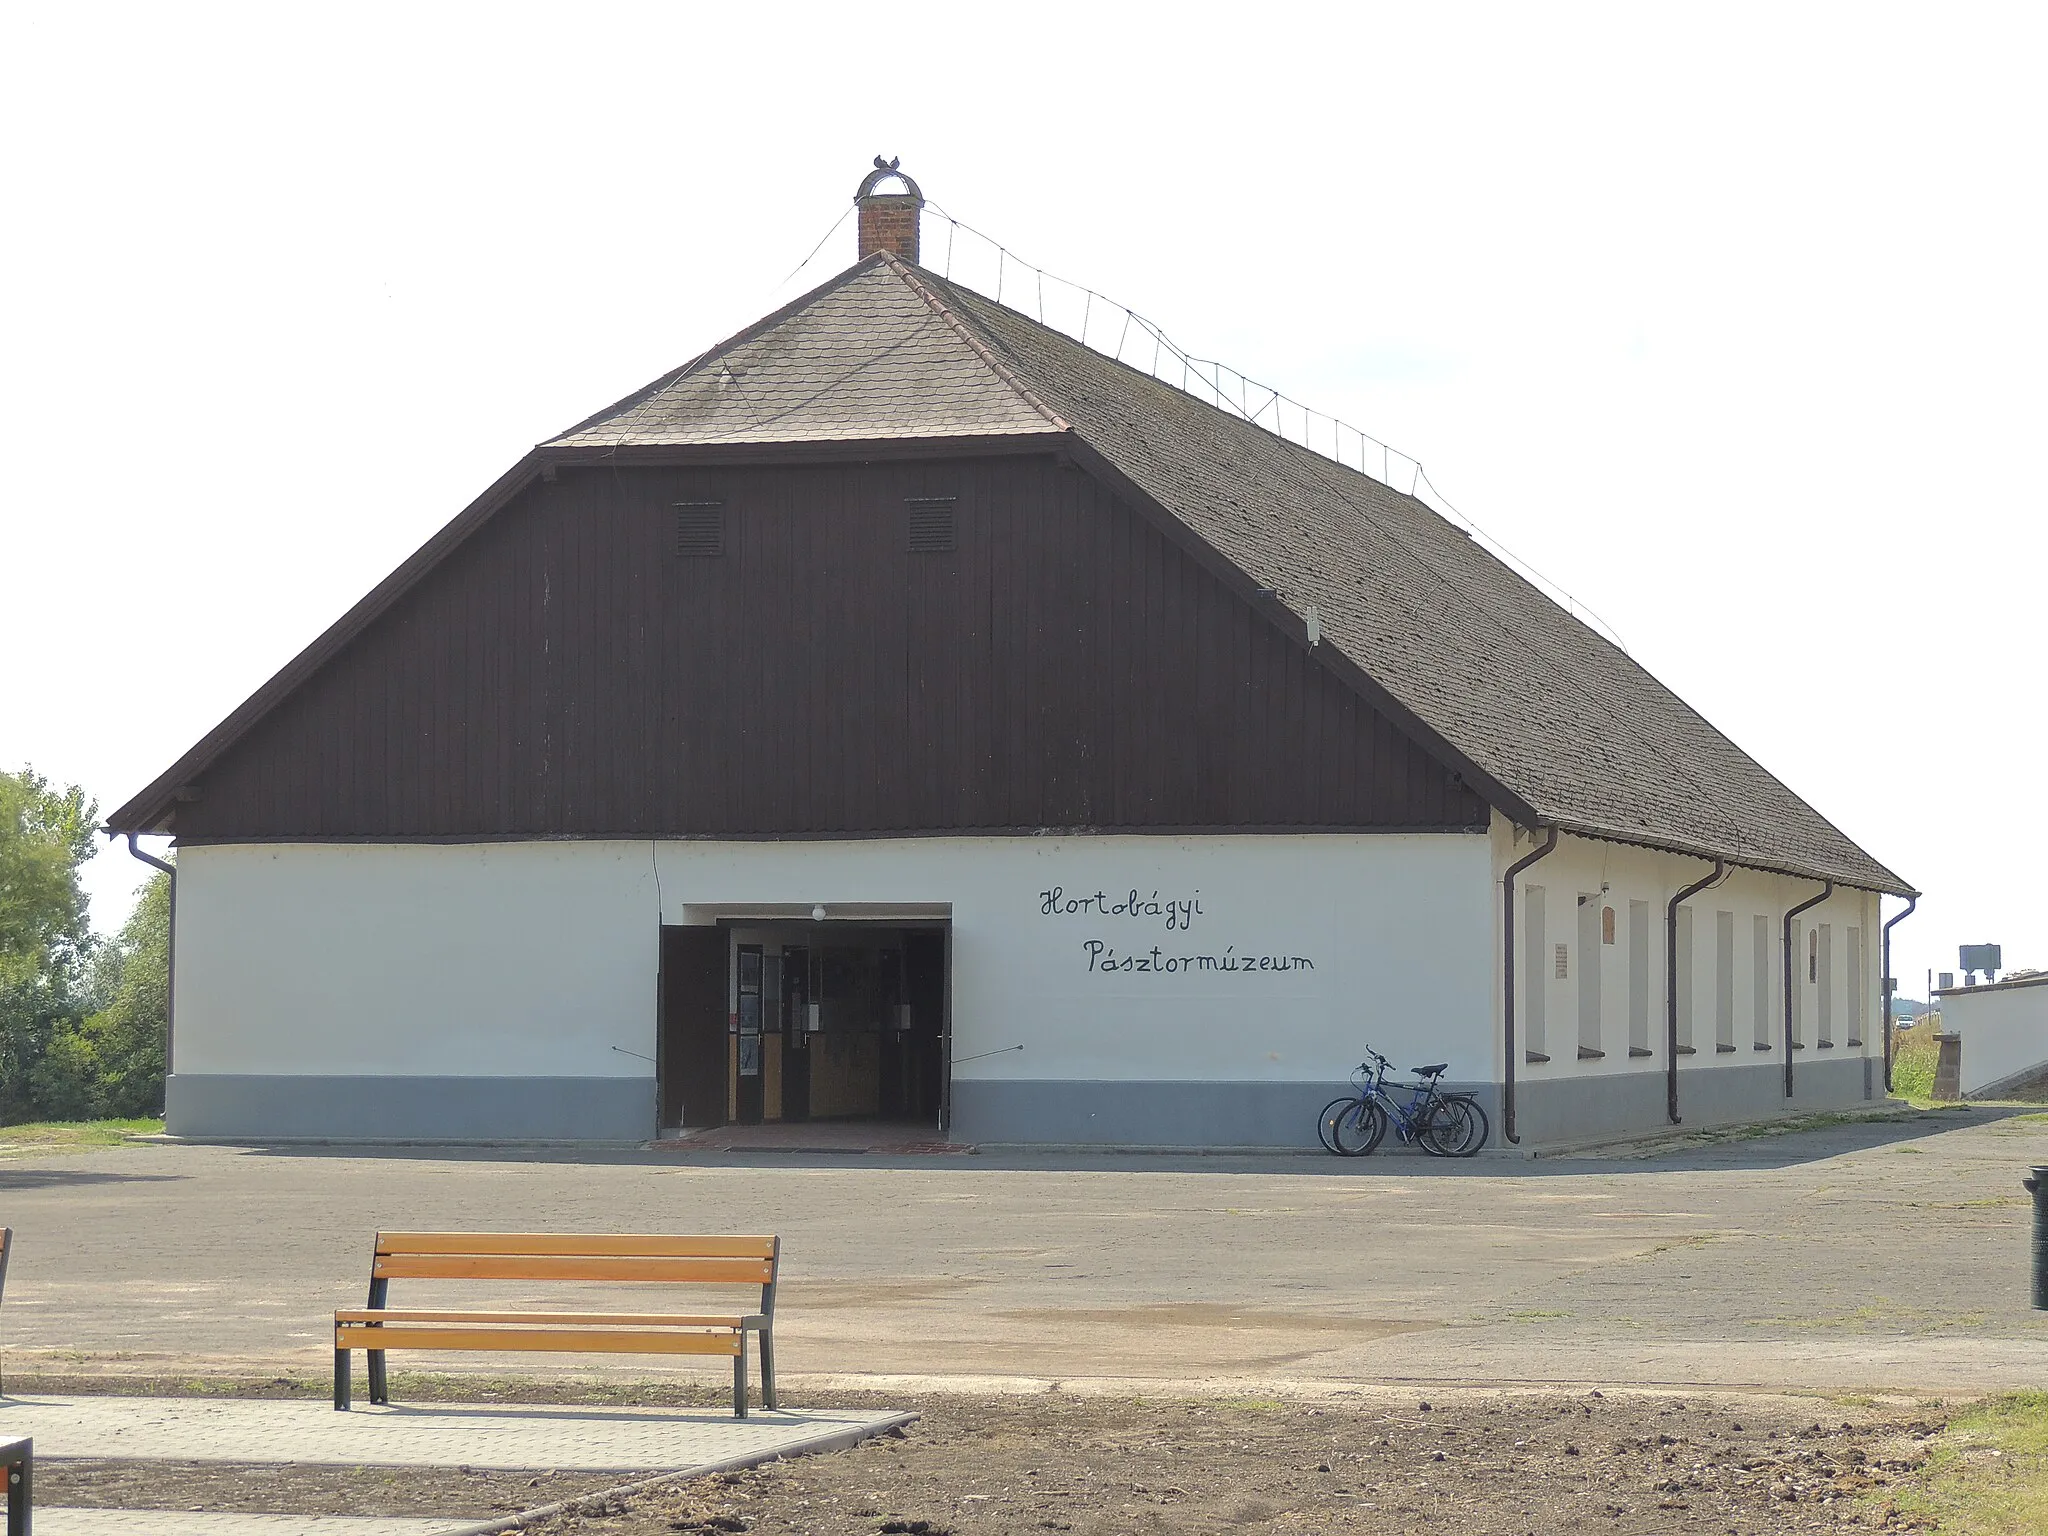 Photo showing: Az egykori szekérállás épülete Hortobágyon, amelyben jelenleg a Hortobágyi Pásztormúzeum működik.